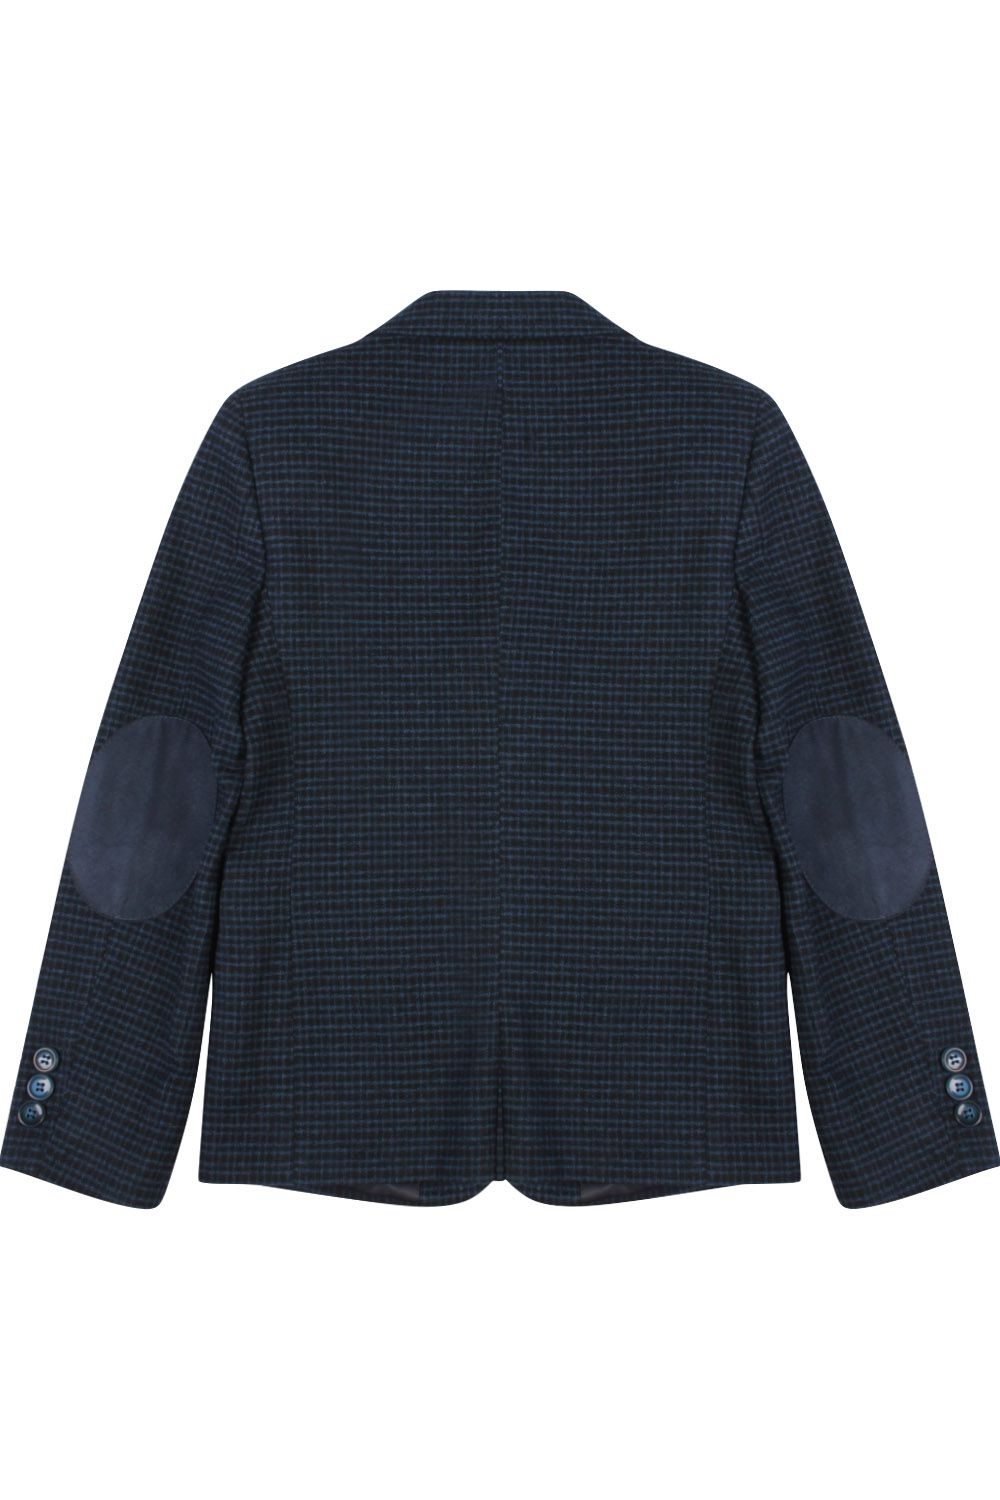 Пиджак Van Cliff, размер 164 (42), цвет синий A90543 - фото 2